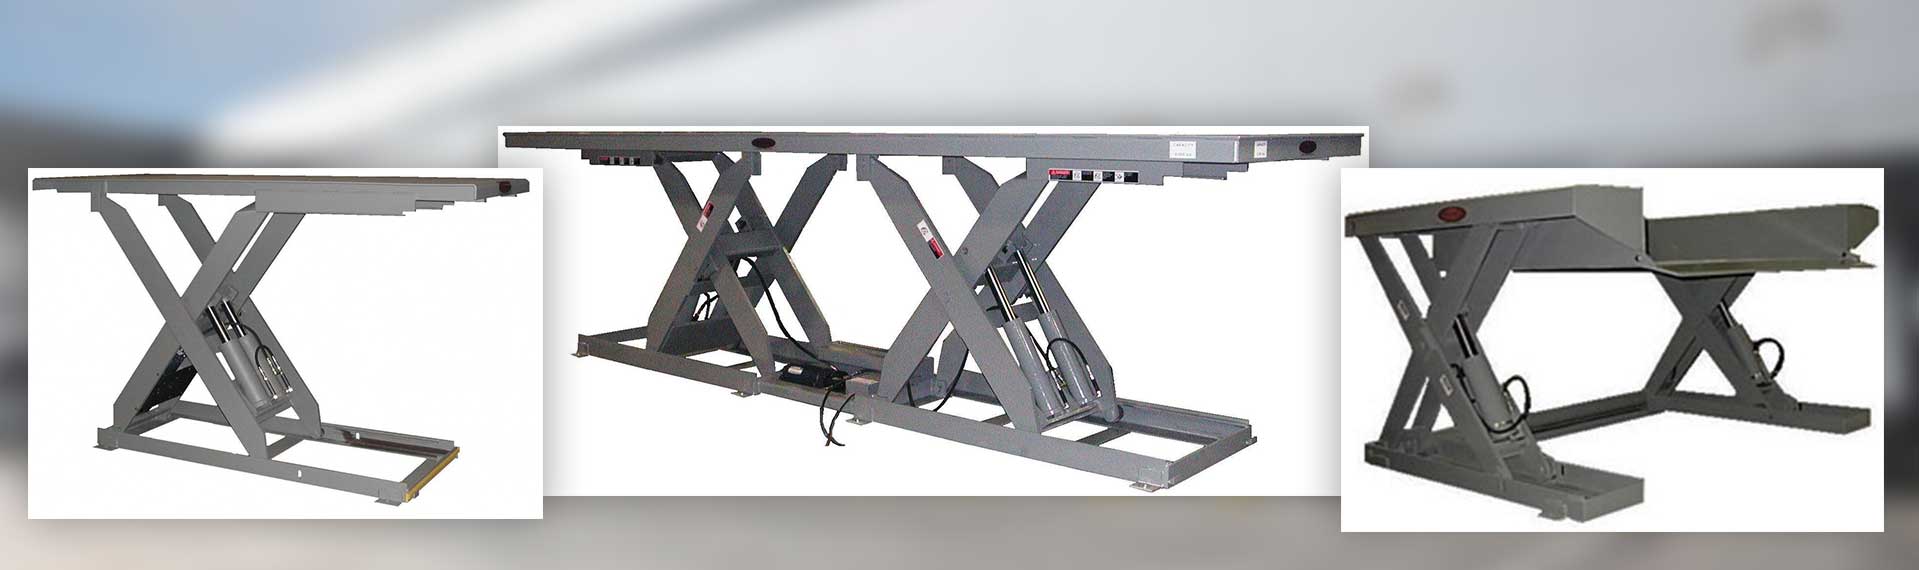 YARD-RAMP-SITE hydraulic lift tables